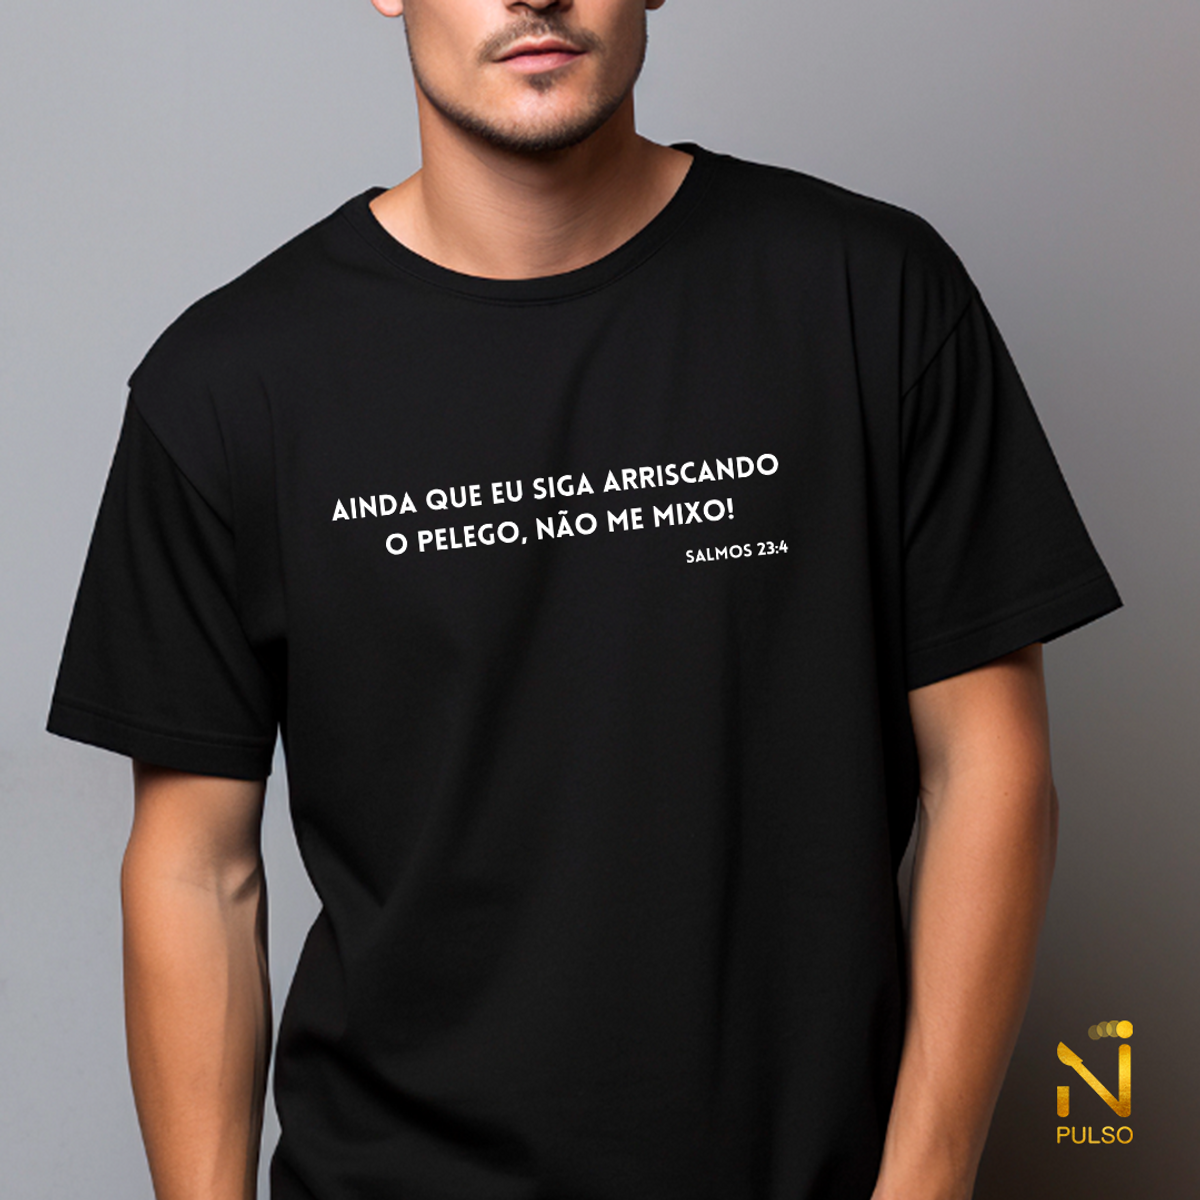 Nome do produto: Camiseta Ainda que eu siga arriscando o pelego, não me mixo! Pastor Gaudério Salmos 23:4